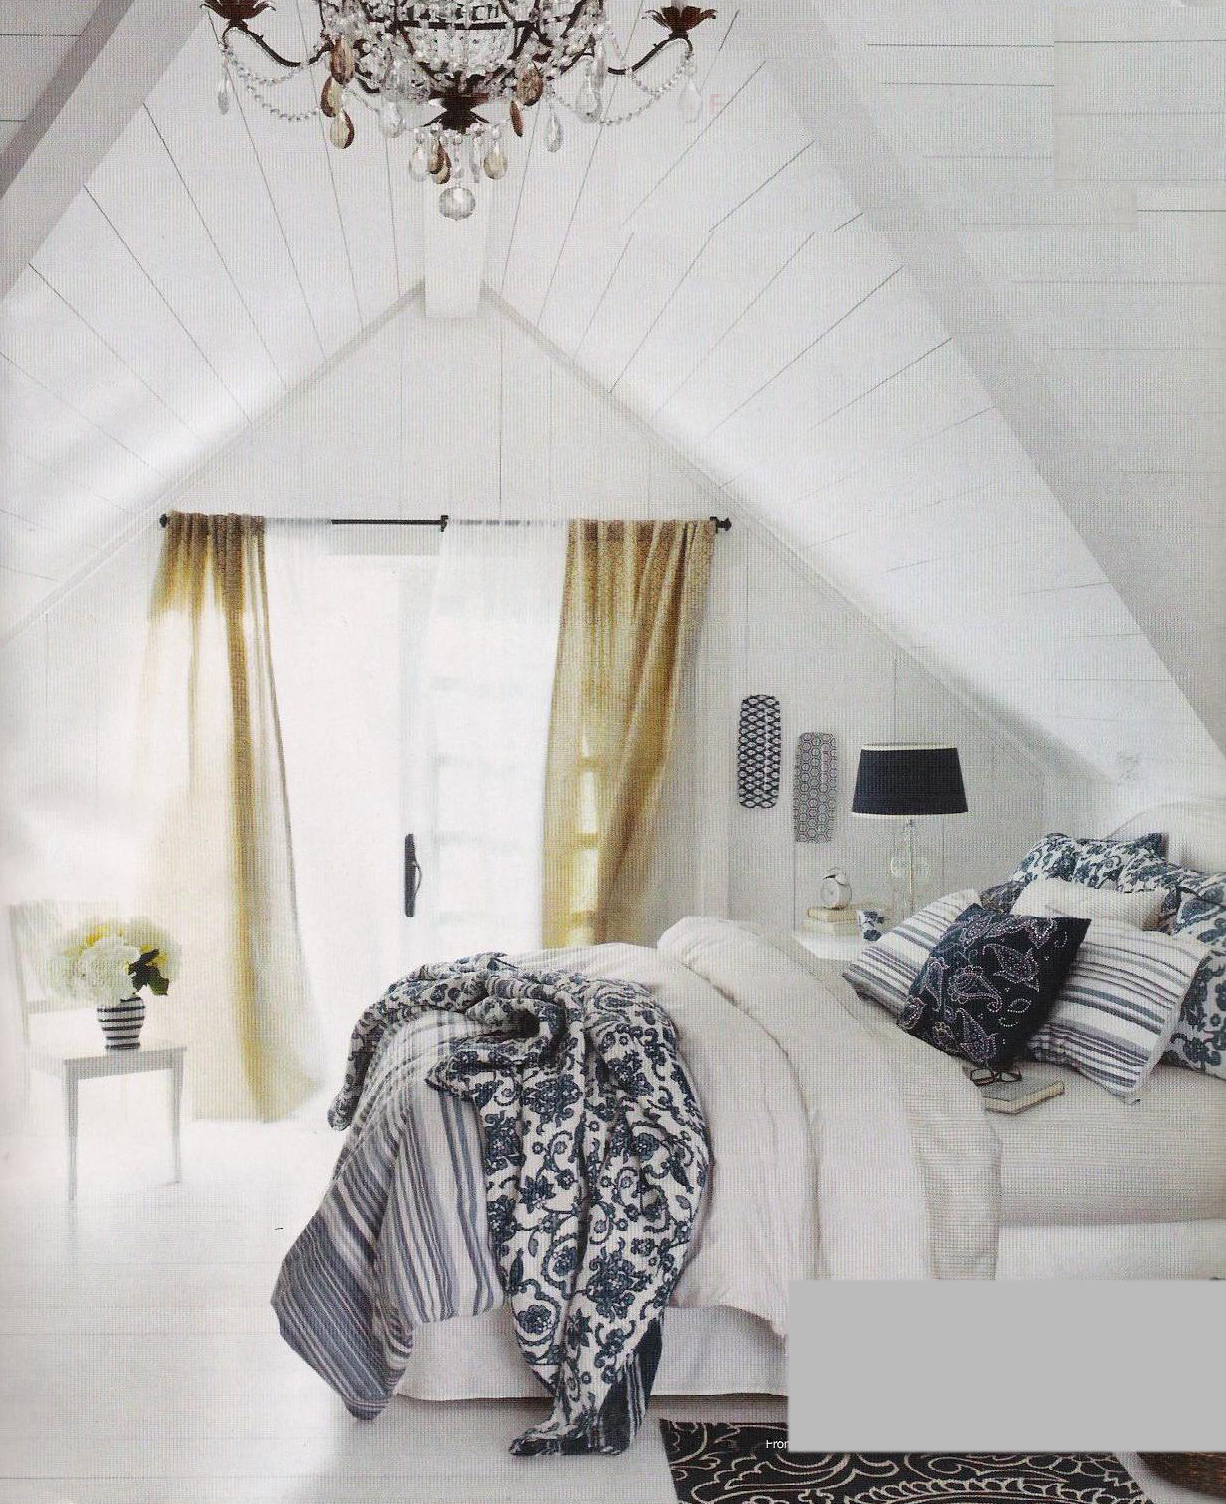 siyah beyaz desenli yatak örtüsü ile beyaz ev dekorasyonu modeli